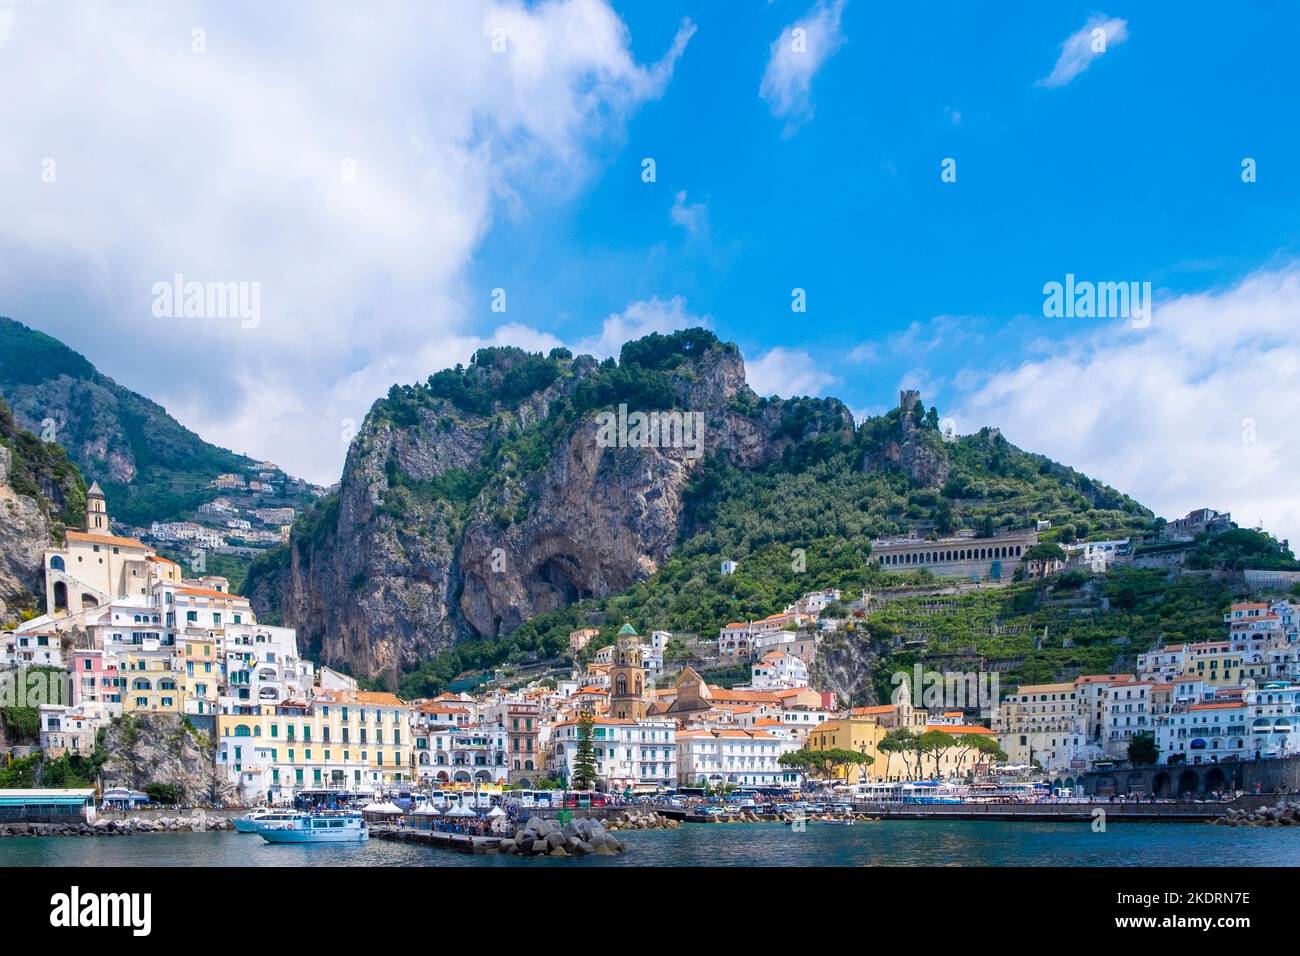 Die Stadt Amalfi an der italienischen Amalfiküste, von einem Boot aus gesehen, als sie die Stadt verlässt Stockfoto